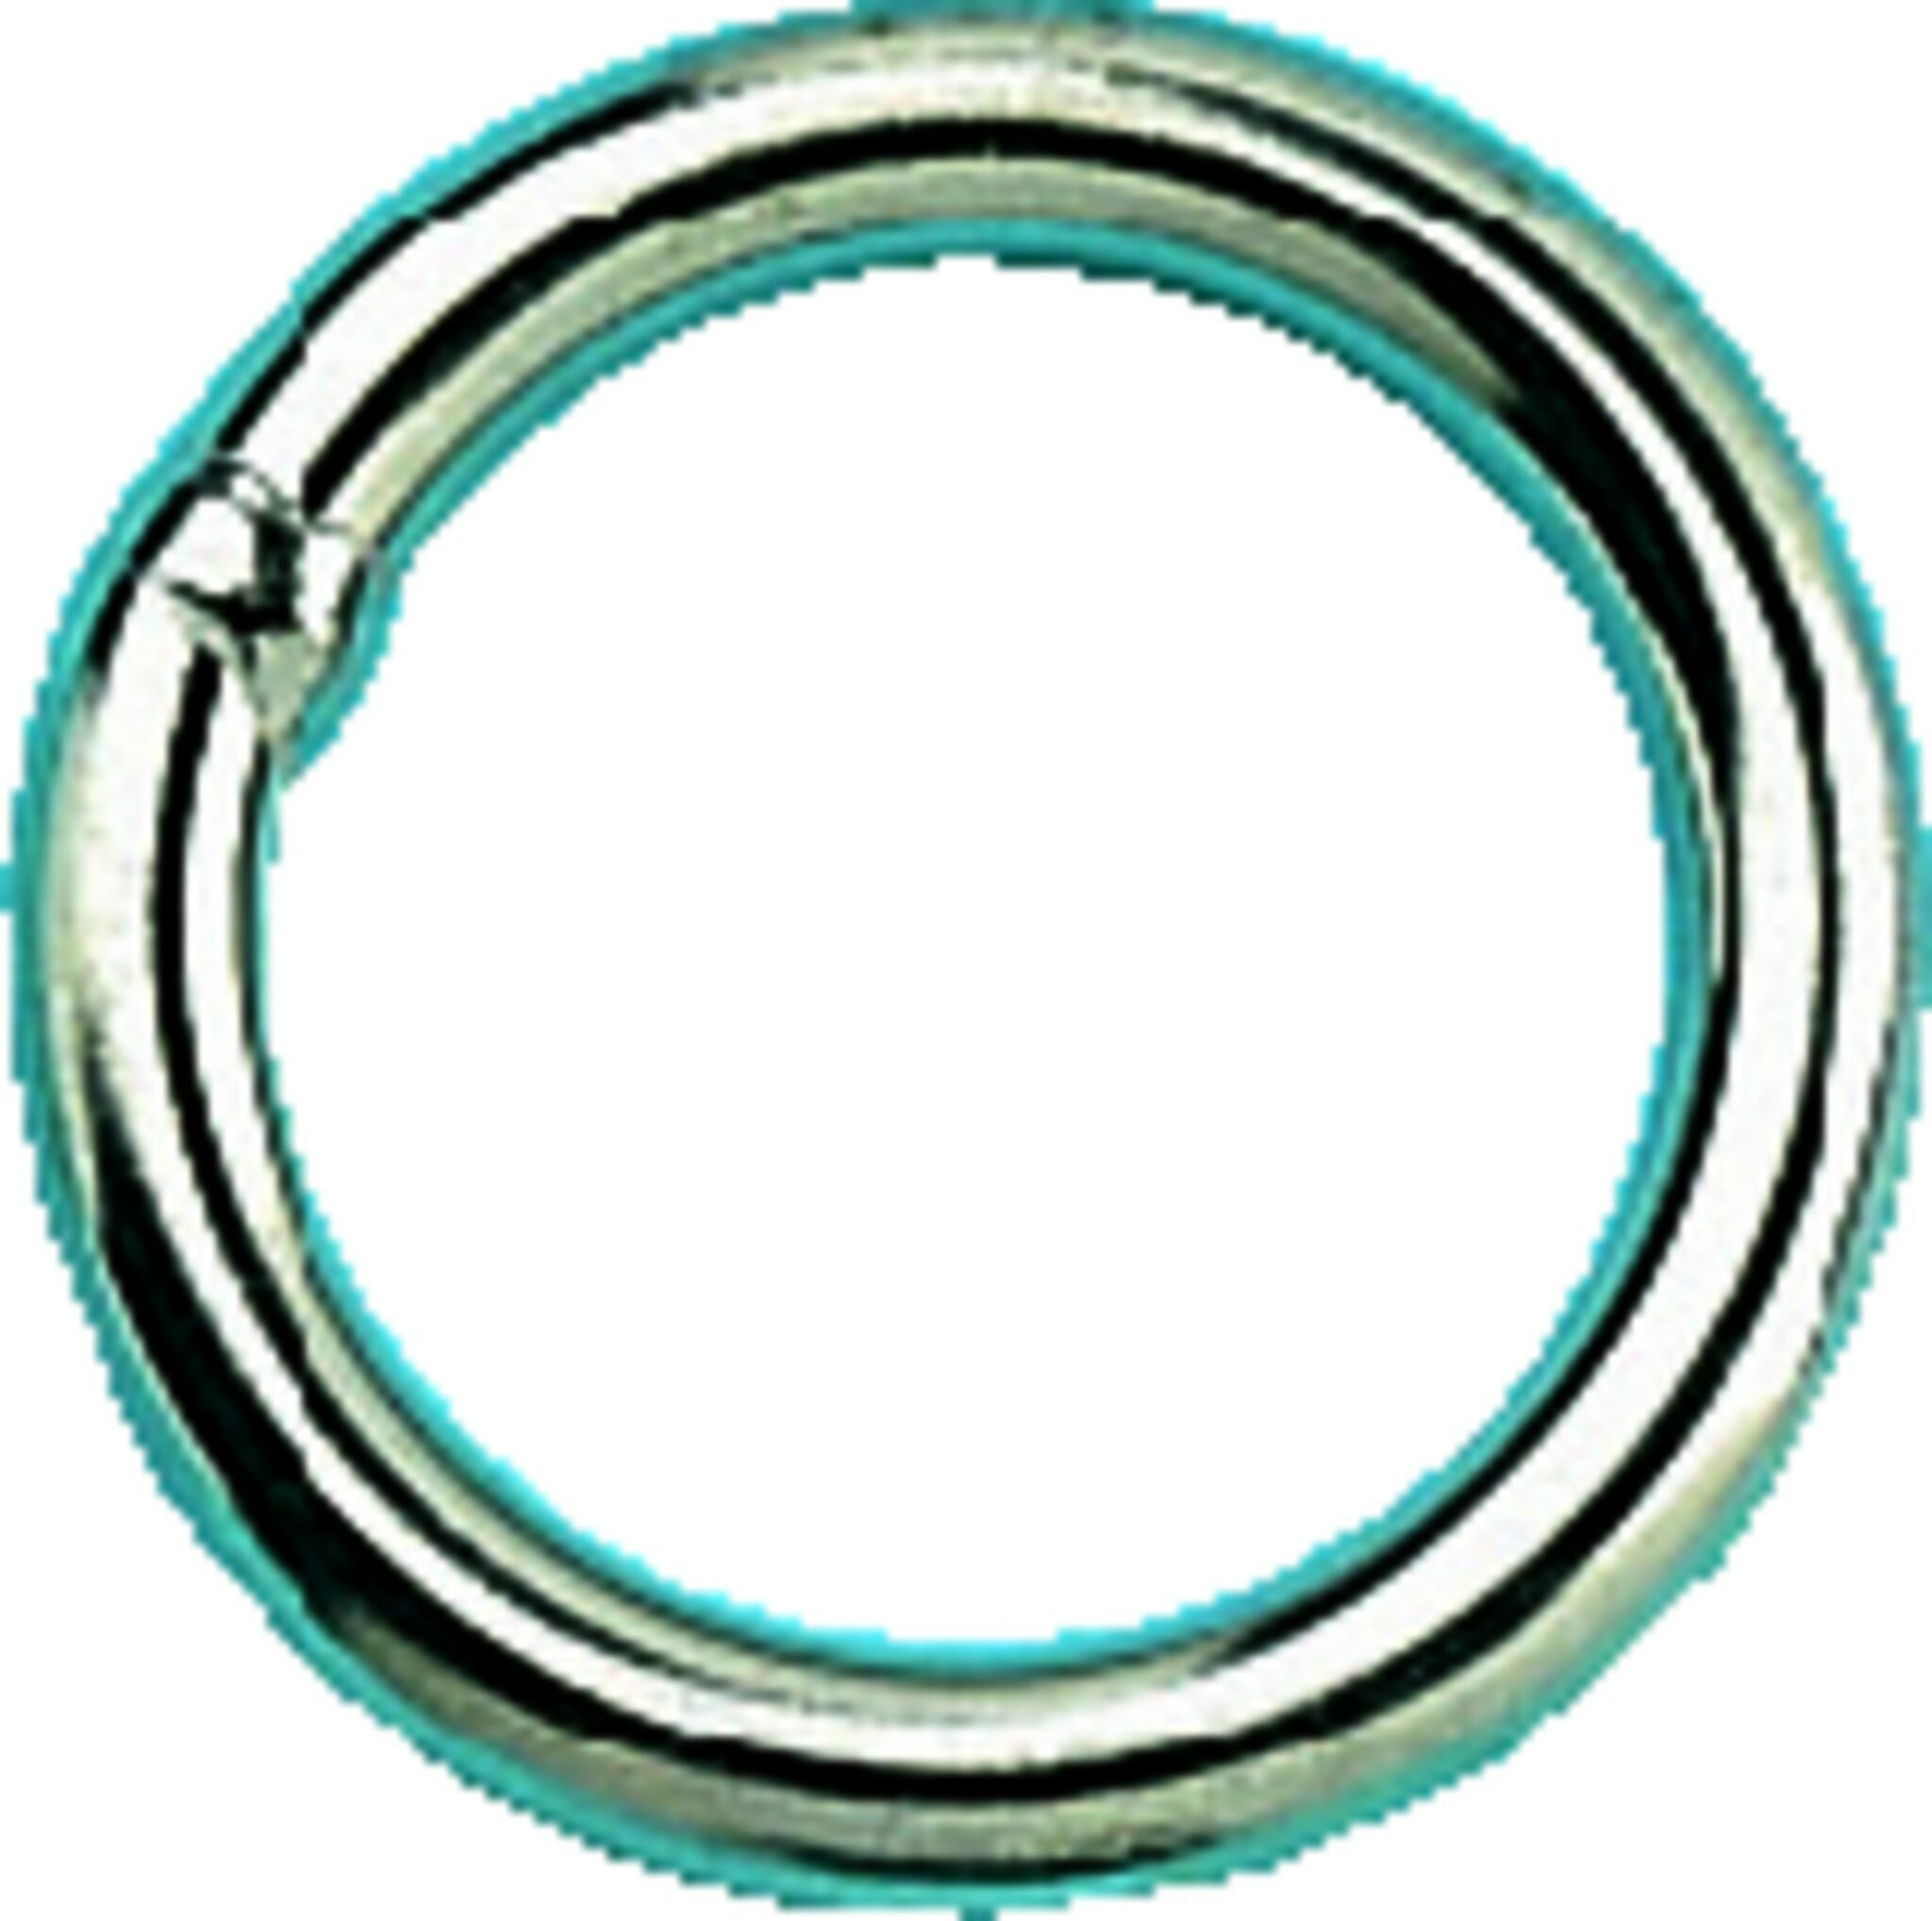 Stainless steel rings 6 mm diameter